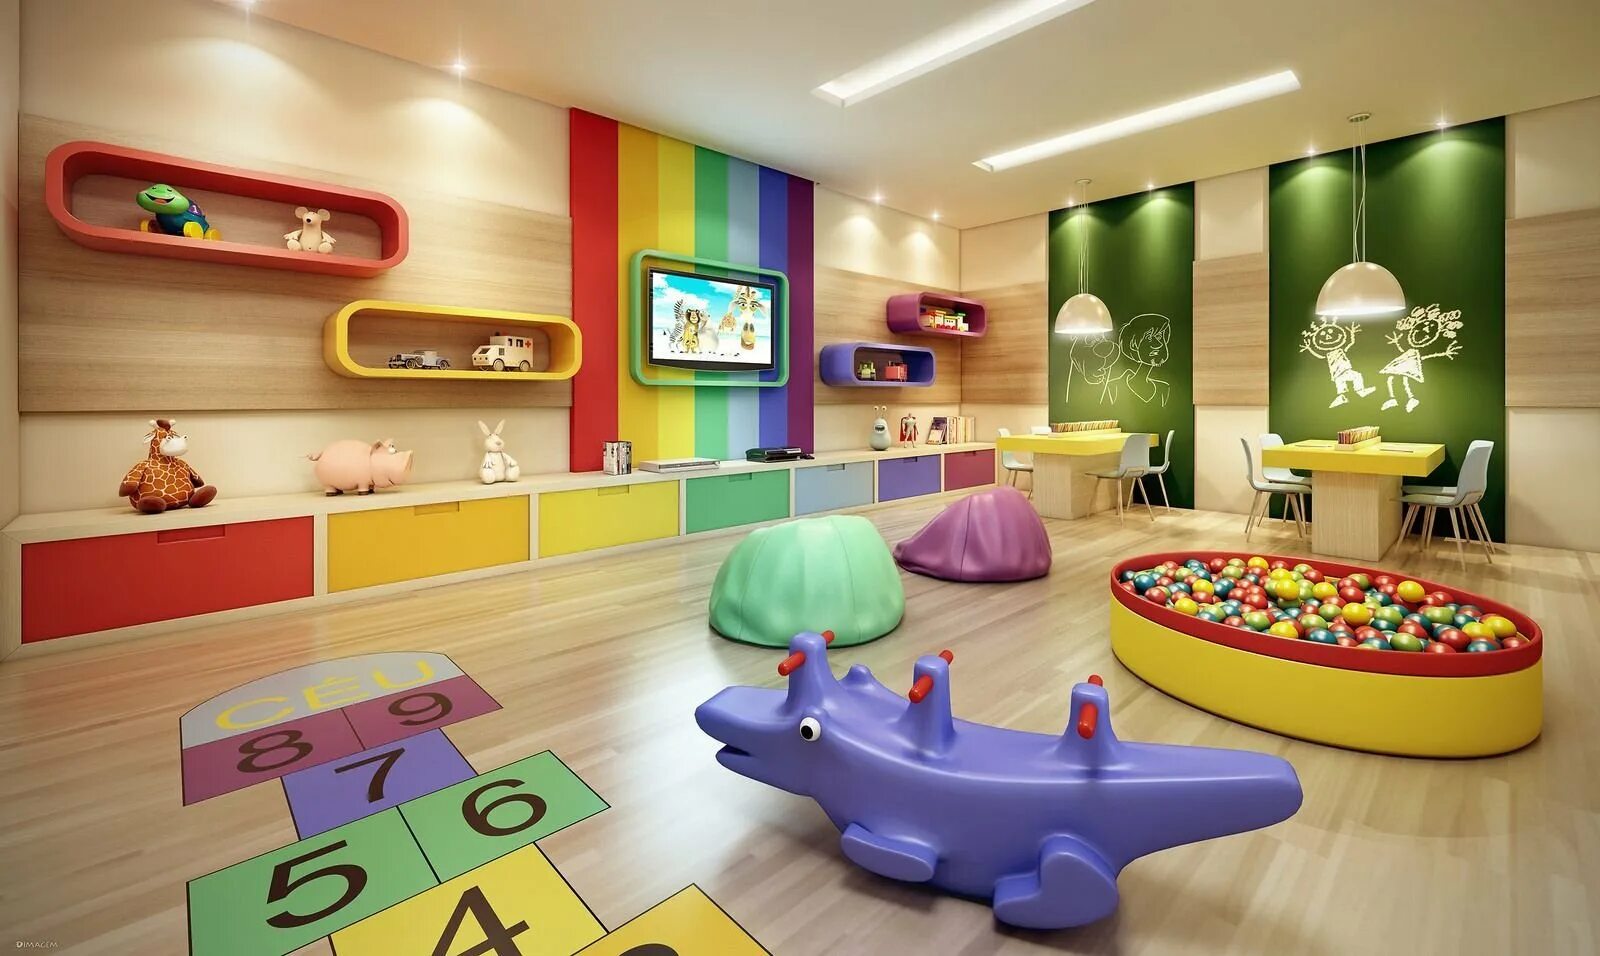 Описание детской комнаты в детском саду. Игровая комната. Детская игровая комната. Развлекательная комната для детей. Игровая комната для детей.